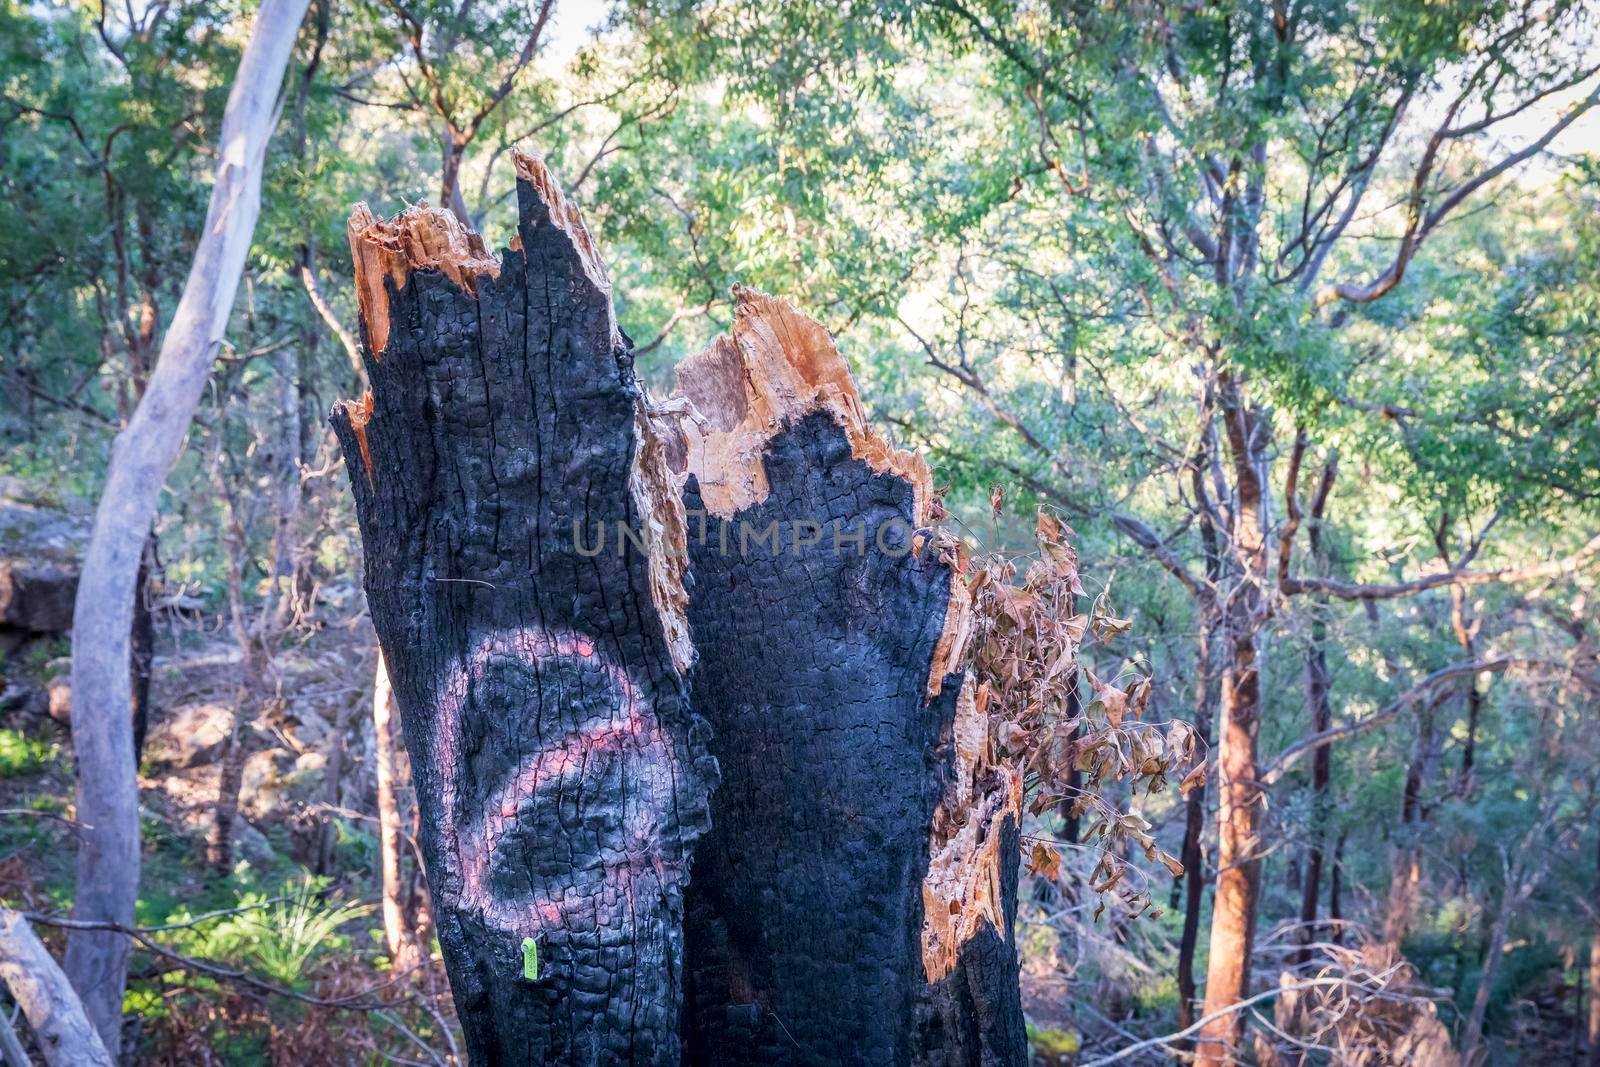 A tree stump burnt by bushfire in regional Australia by WittkePhotos